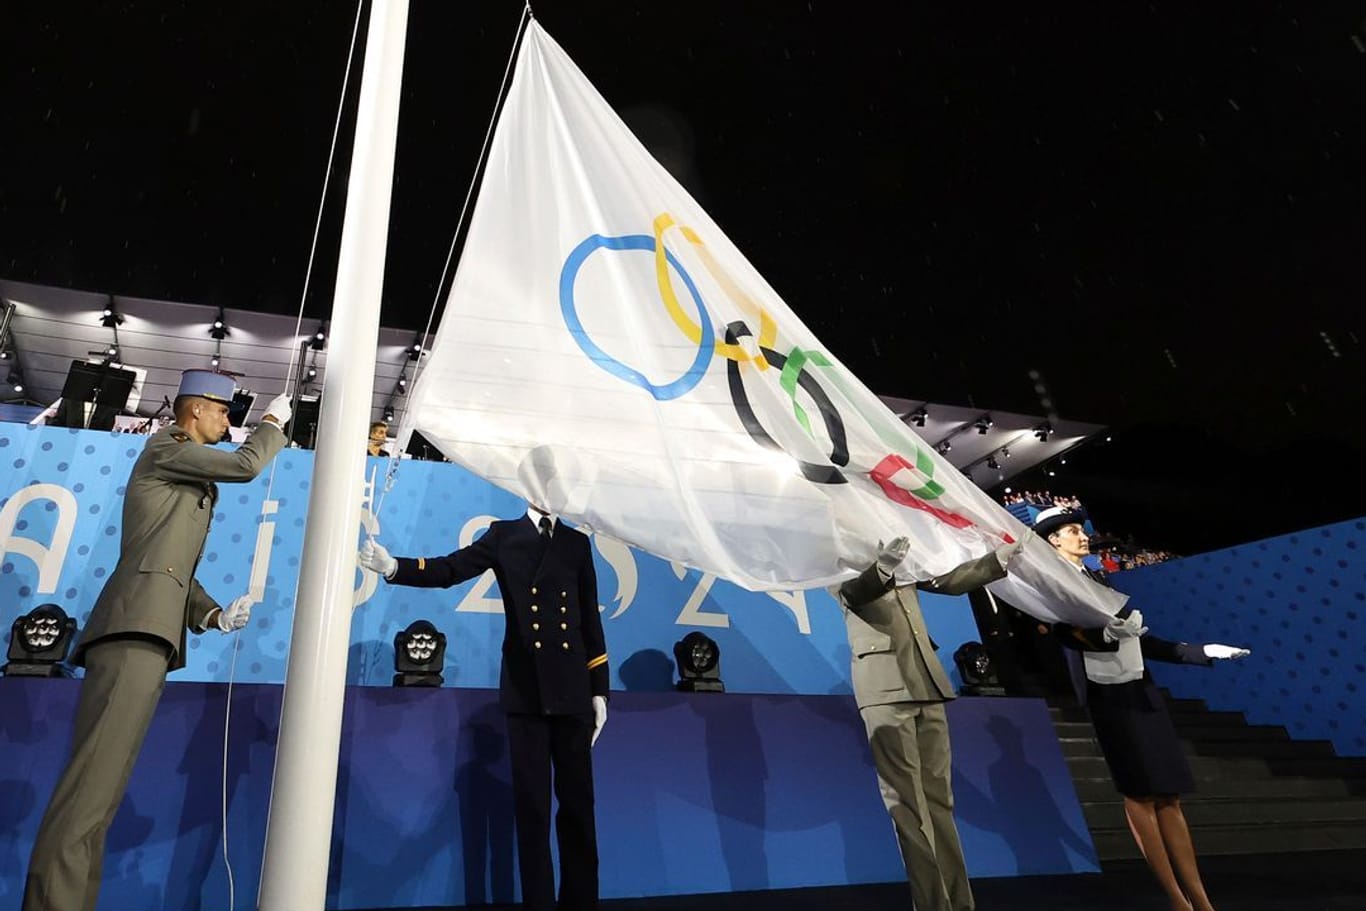 Zwei Ringe oben, drei Ringe unten: Die Olympia-Flagge wurde falsch herum gehisst.